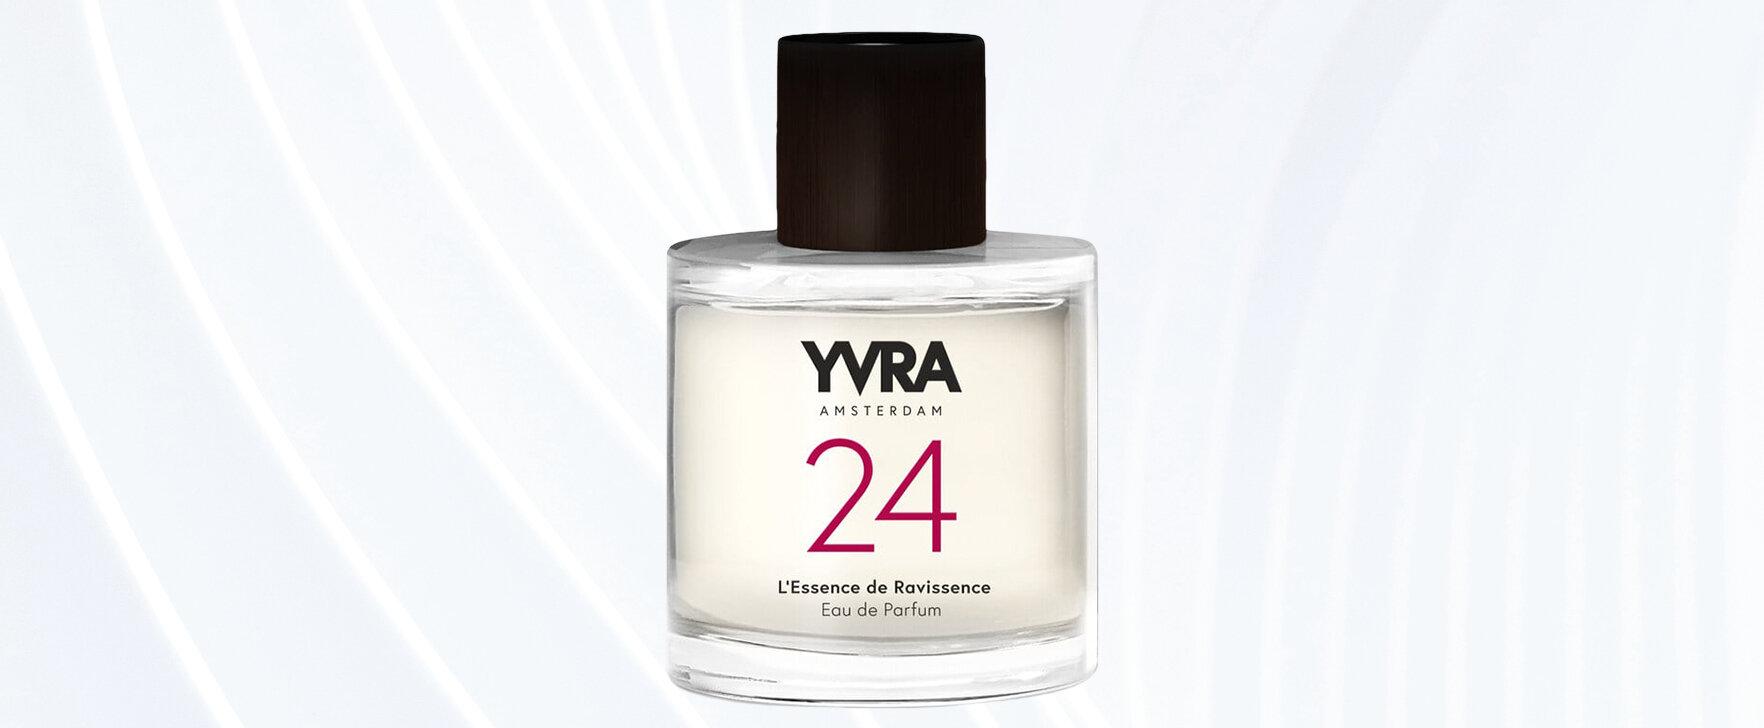 The New Eau de Parfum "24 - L'Essence de Ravissence": An Ode To Change